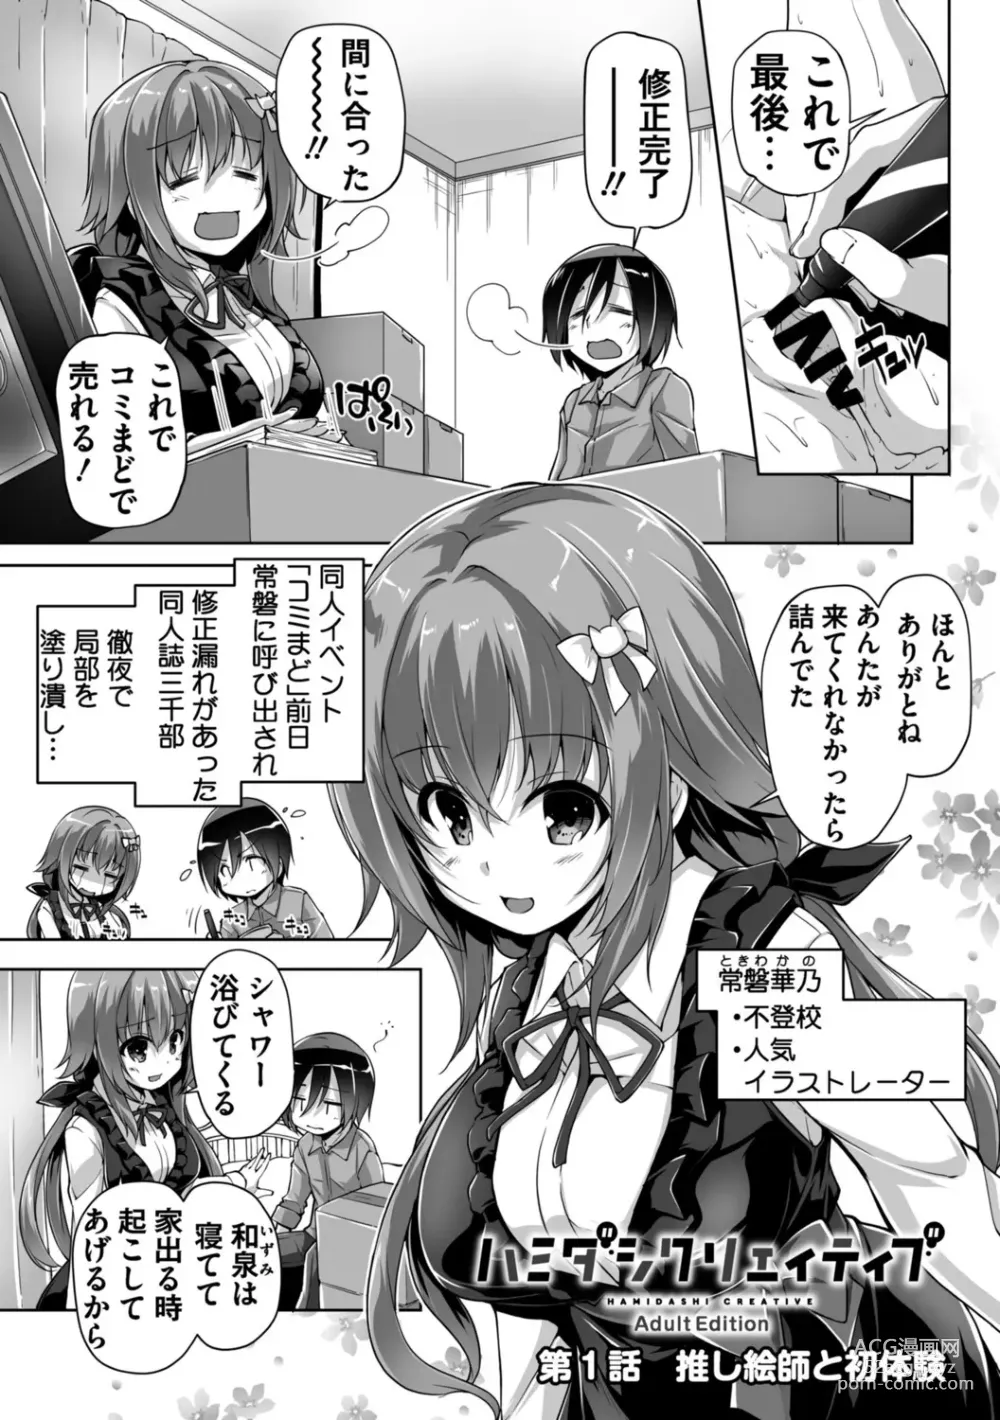 Page 5 of manga Hamidashi Creative Adult Edition